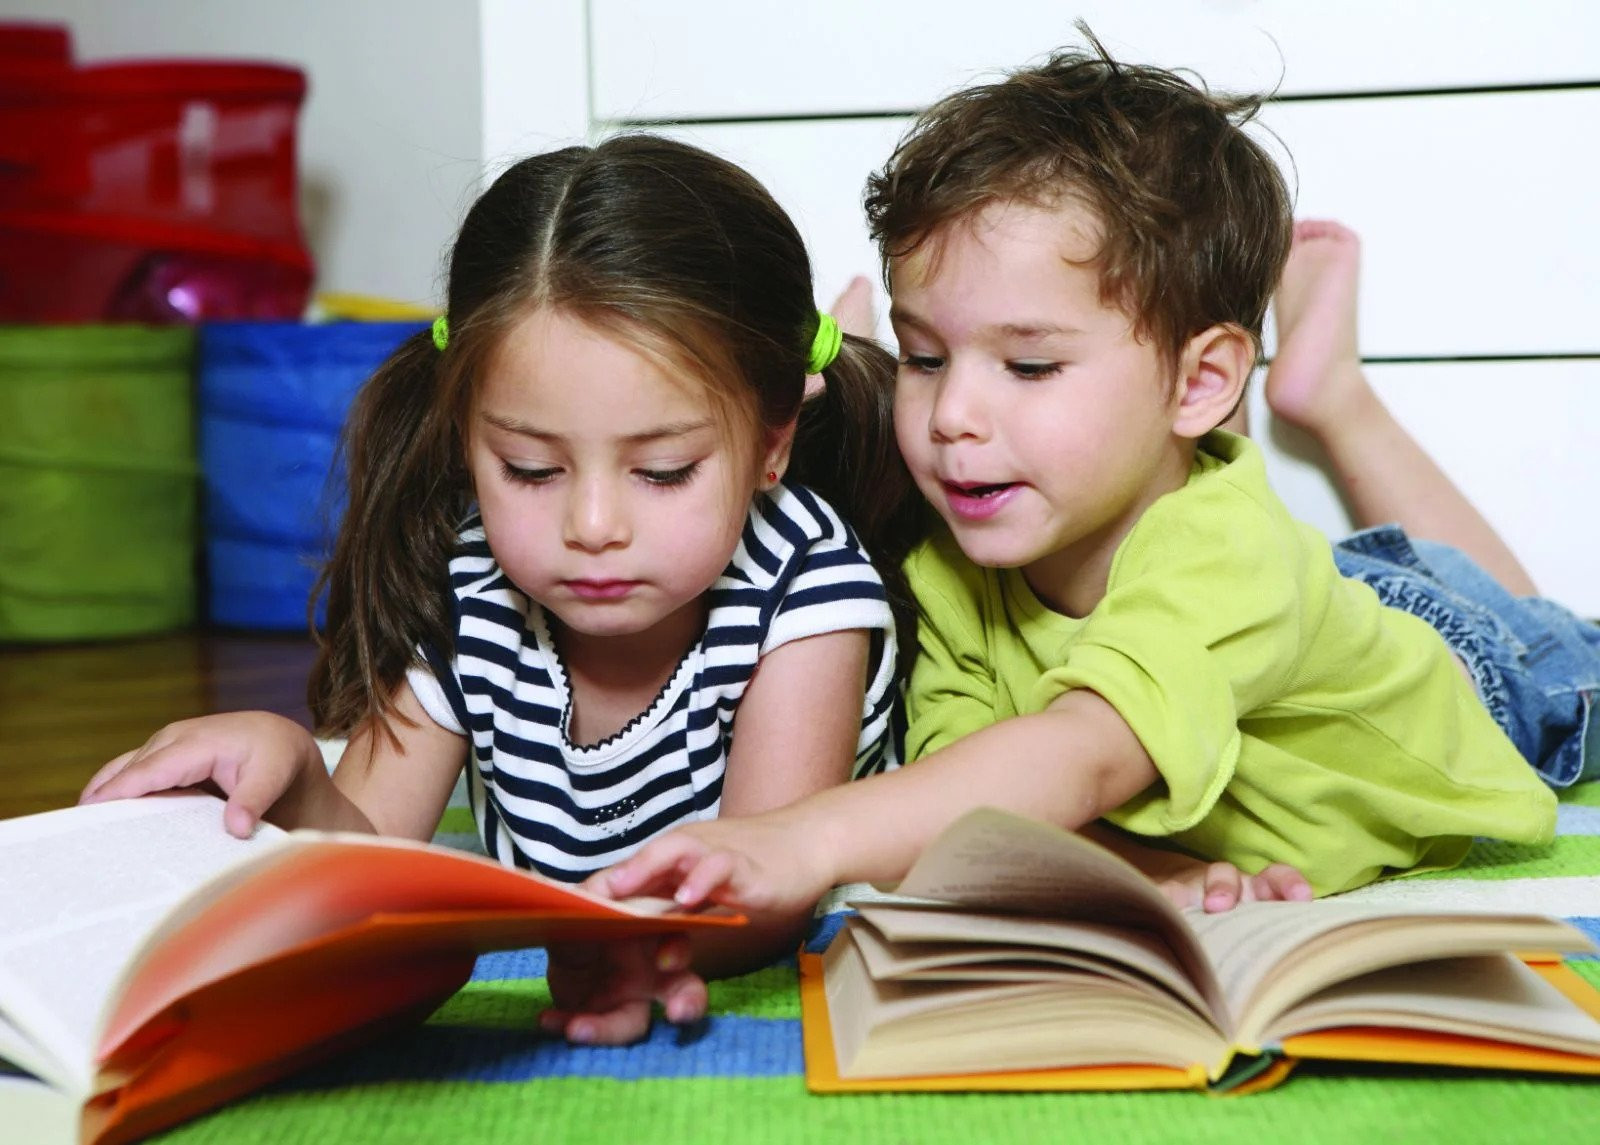 Việc lựa chọn sách đúng với độ tuổi ảnh hưởng sâu sắc tới nhận thức và hành vi hàng ngày của con trẻ. Ảnh: blog.beamingbooks.com